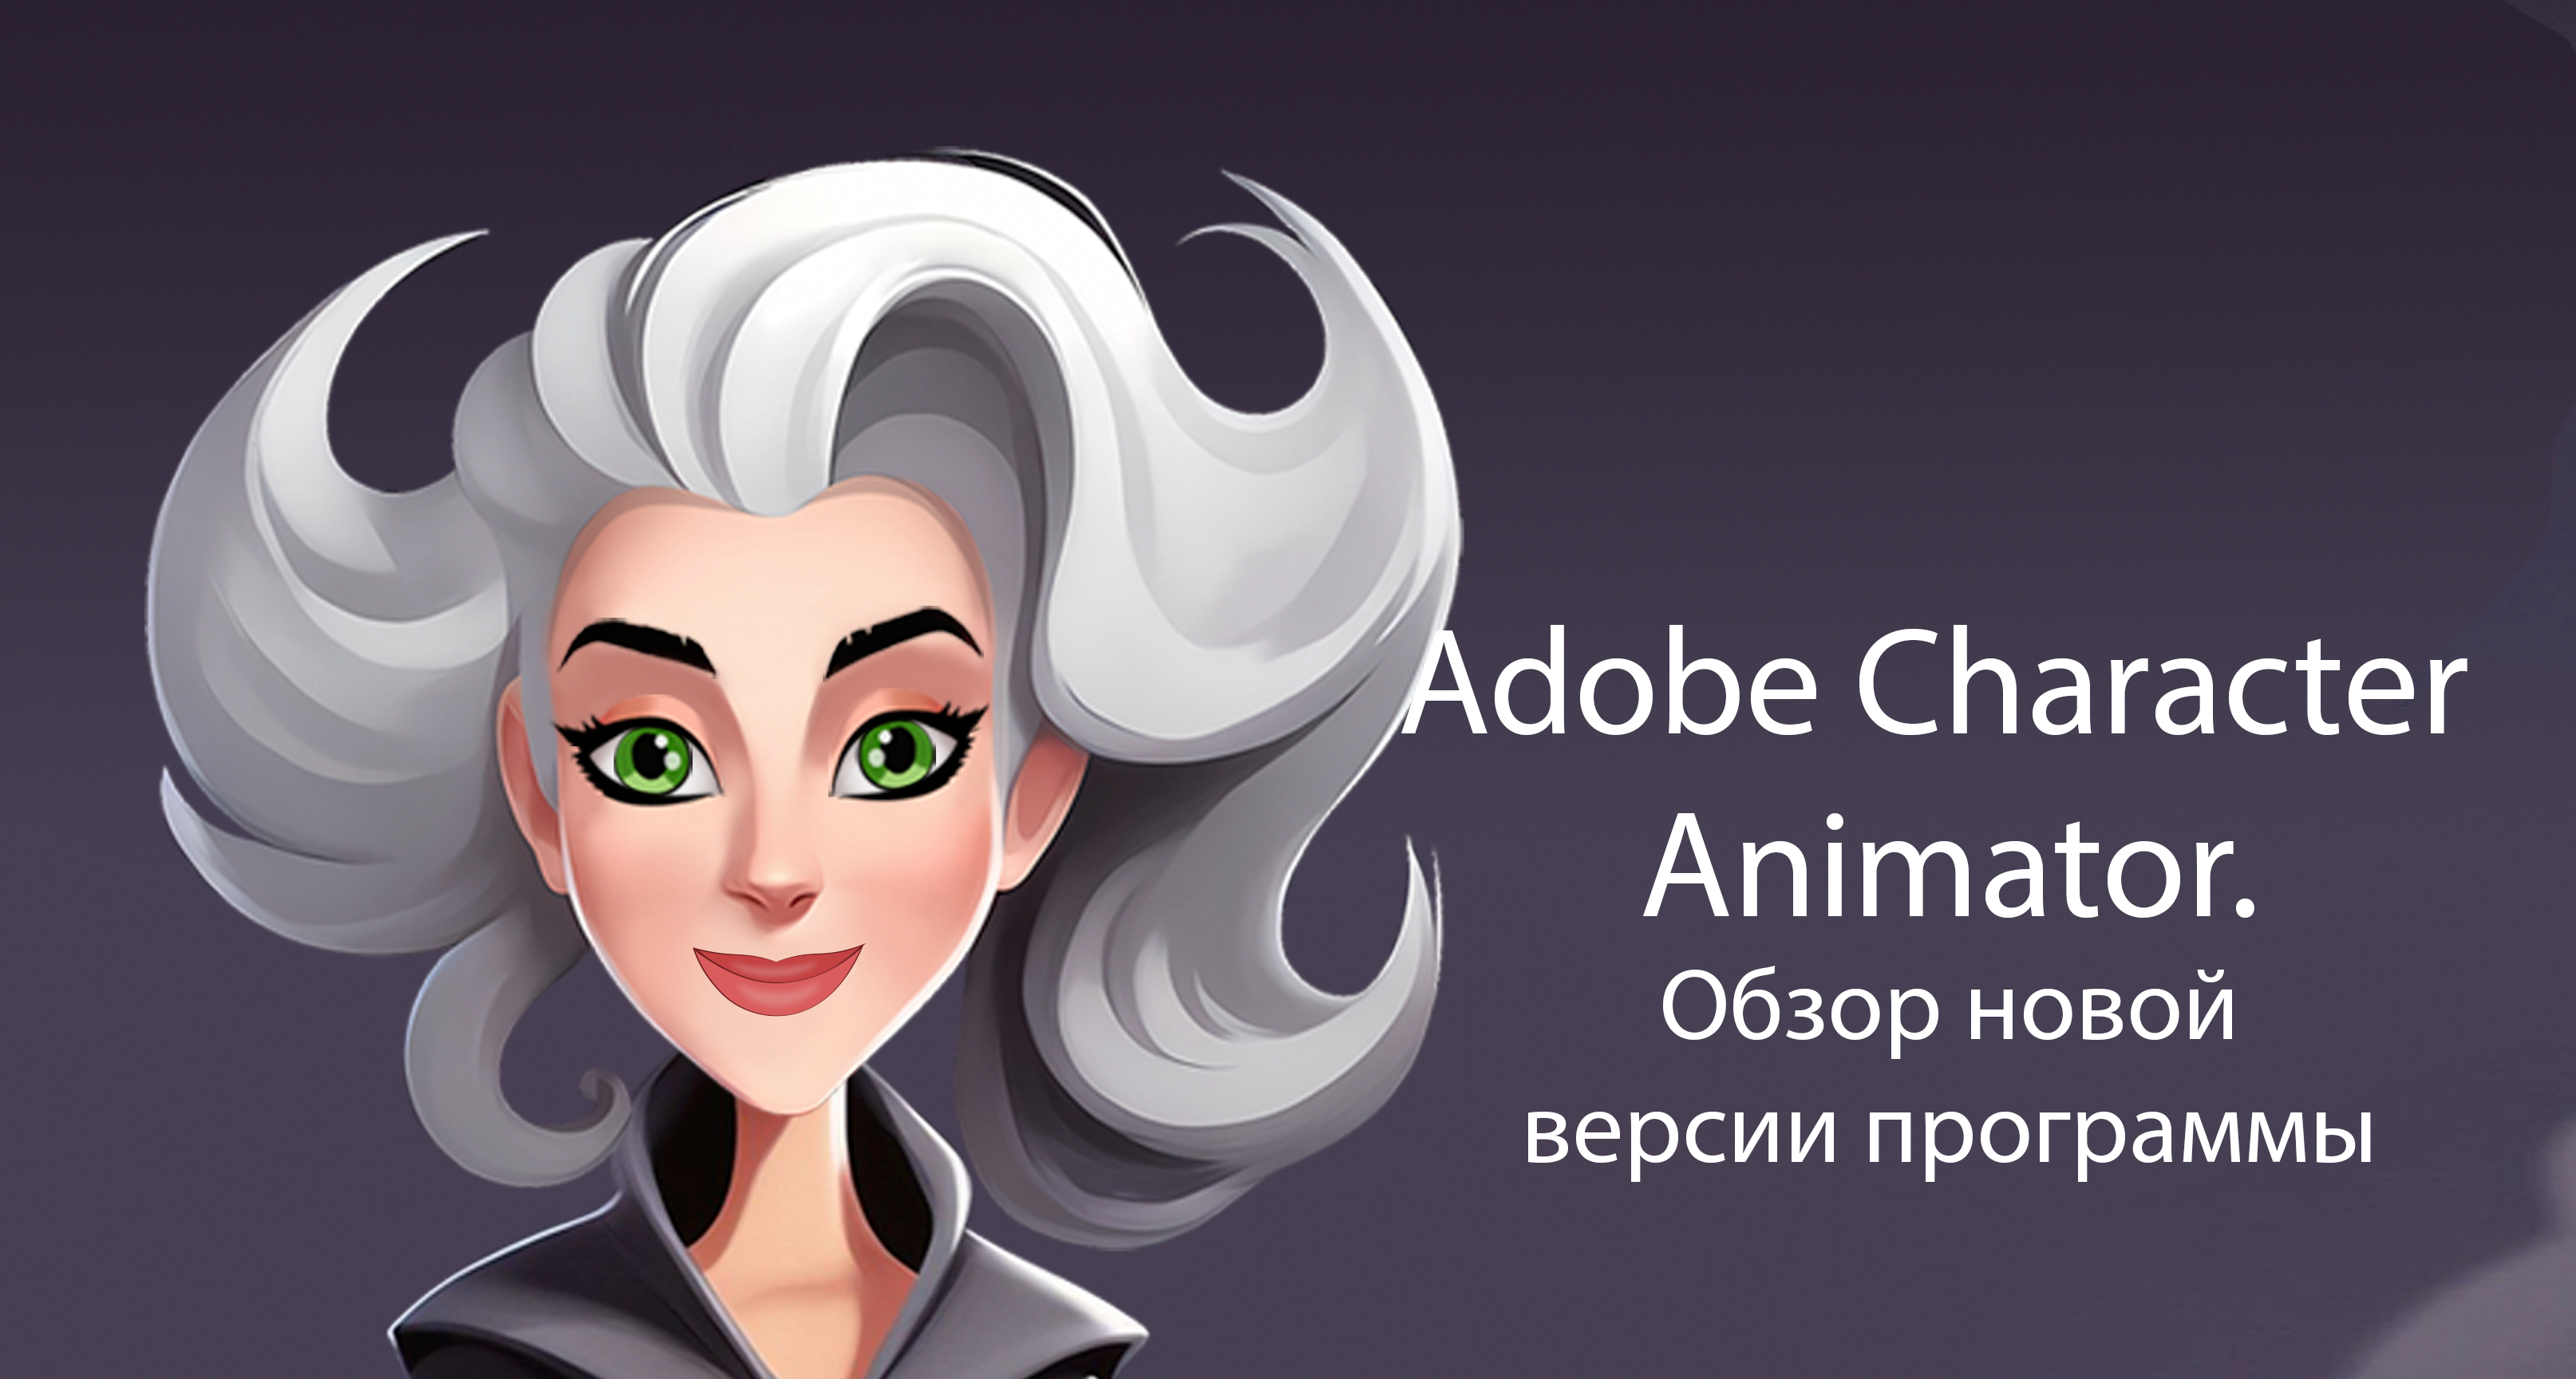 Adobe Character Animator, обзор новой версии программы.(1 часть)